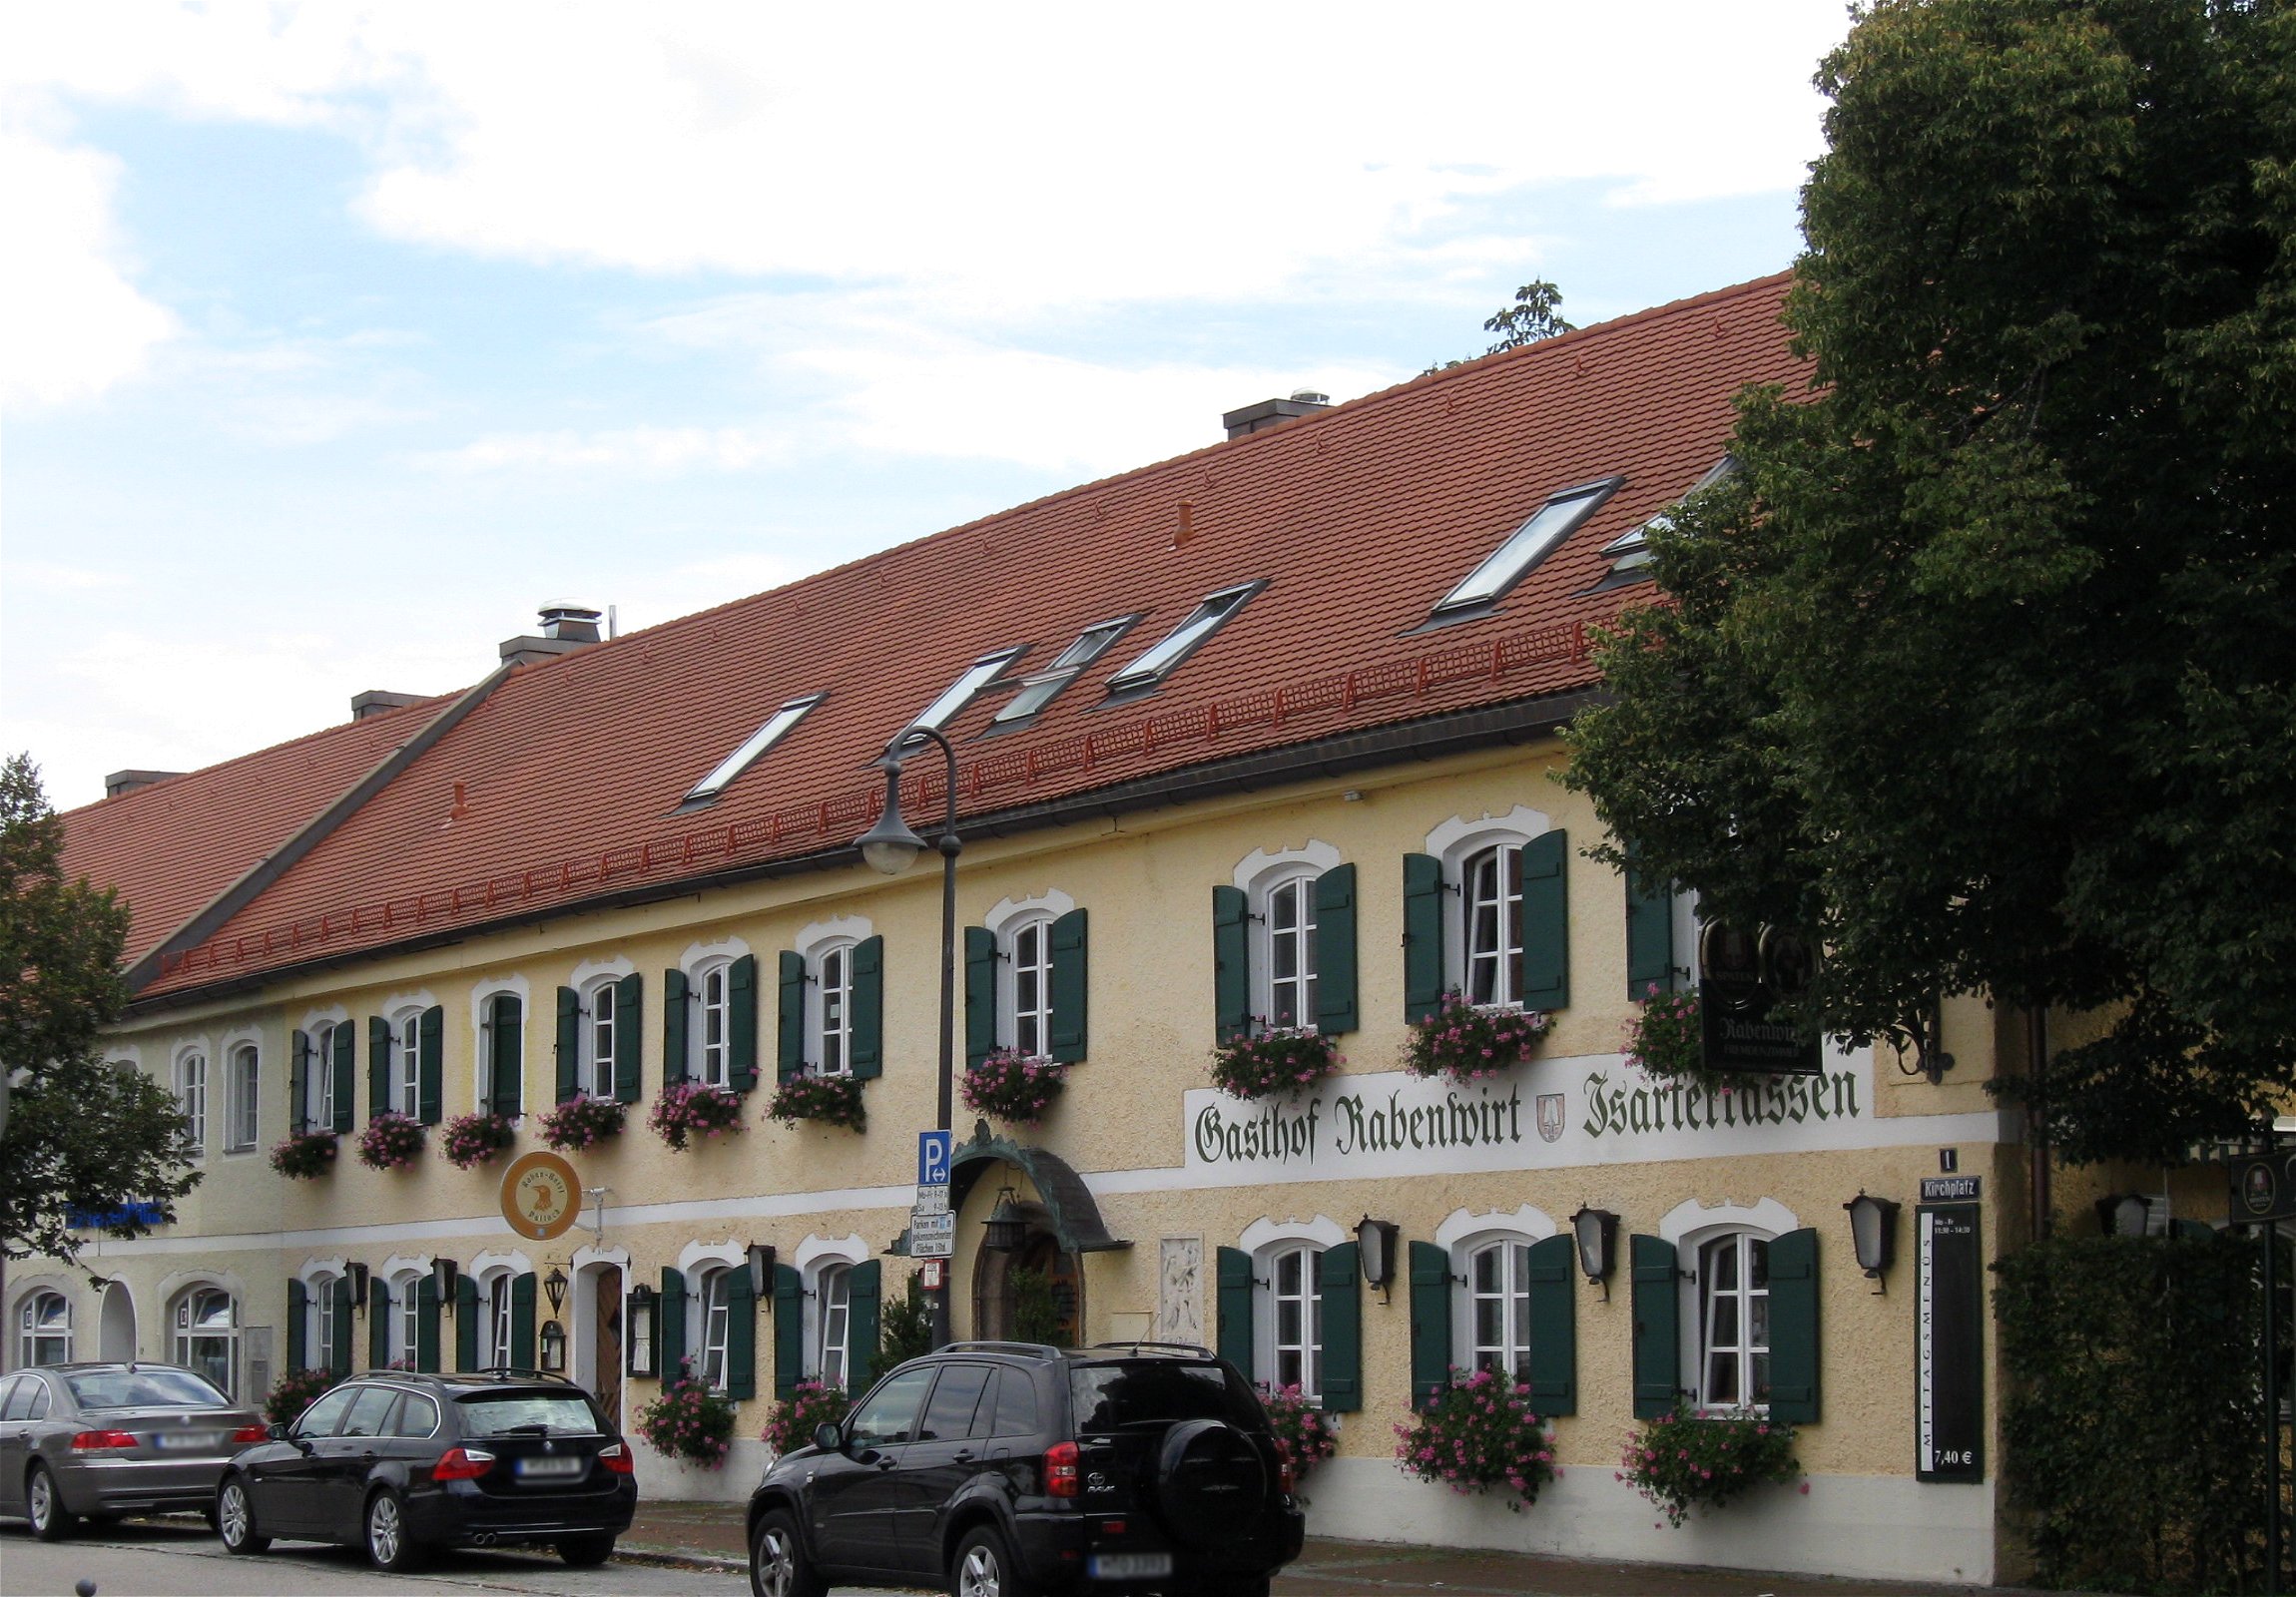 Kirchplatz 1; Gasthaus Rabenwirt, 22 Fensterachsen langer zweigeschossiger Traufseitbau von besonder...